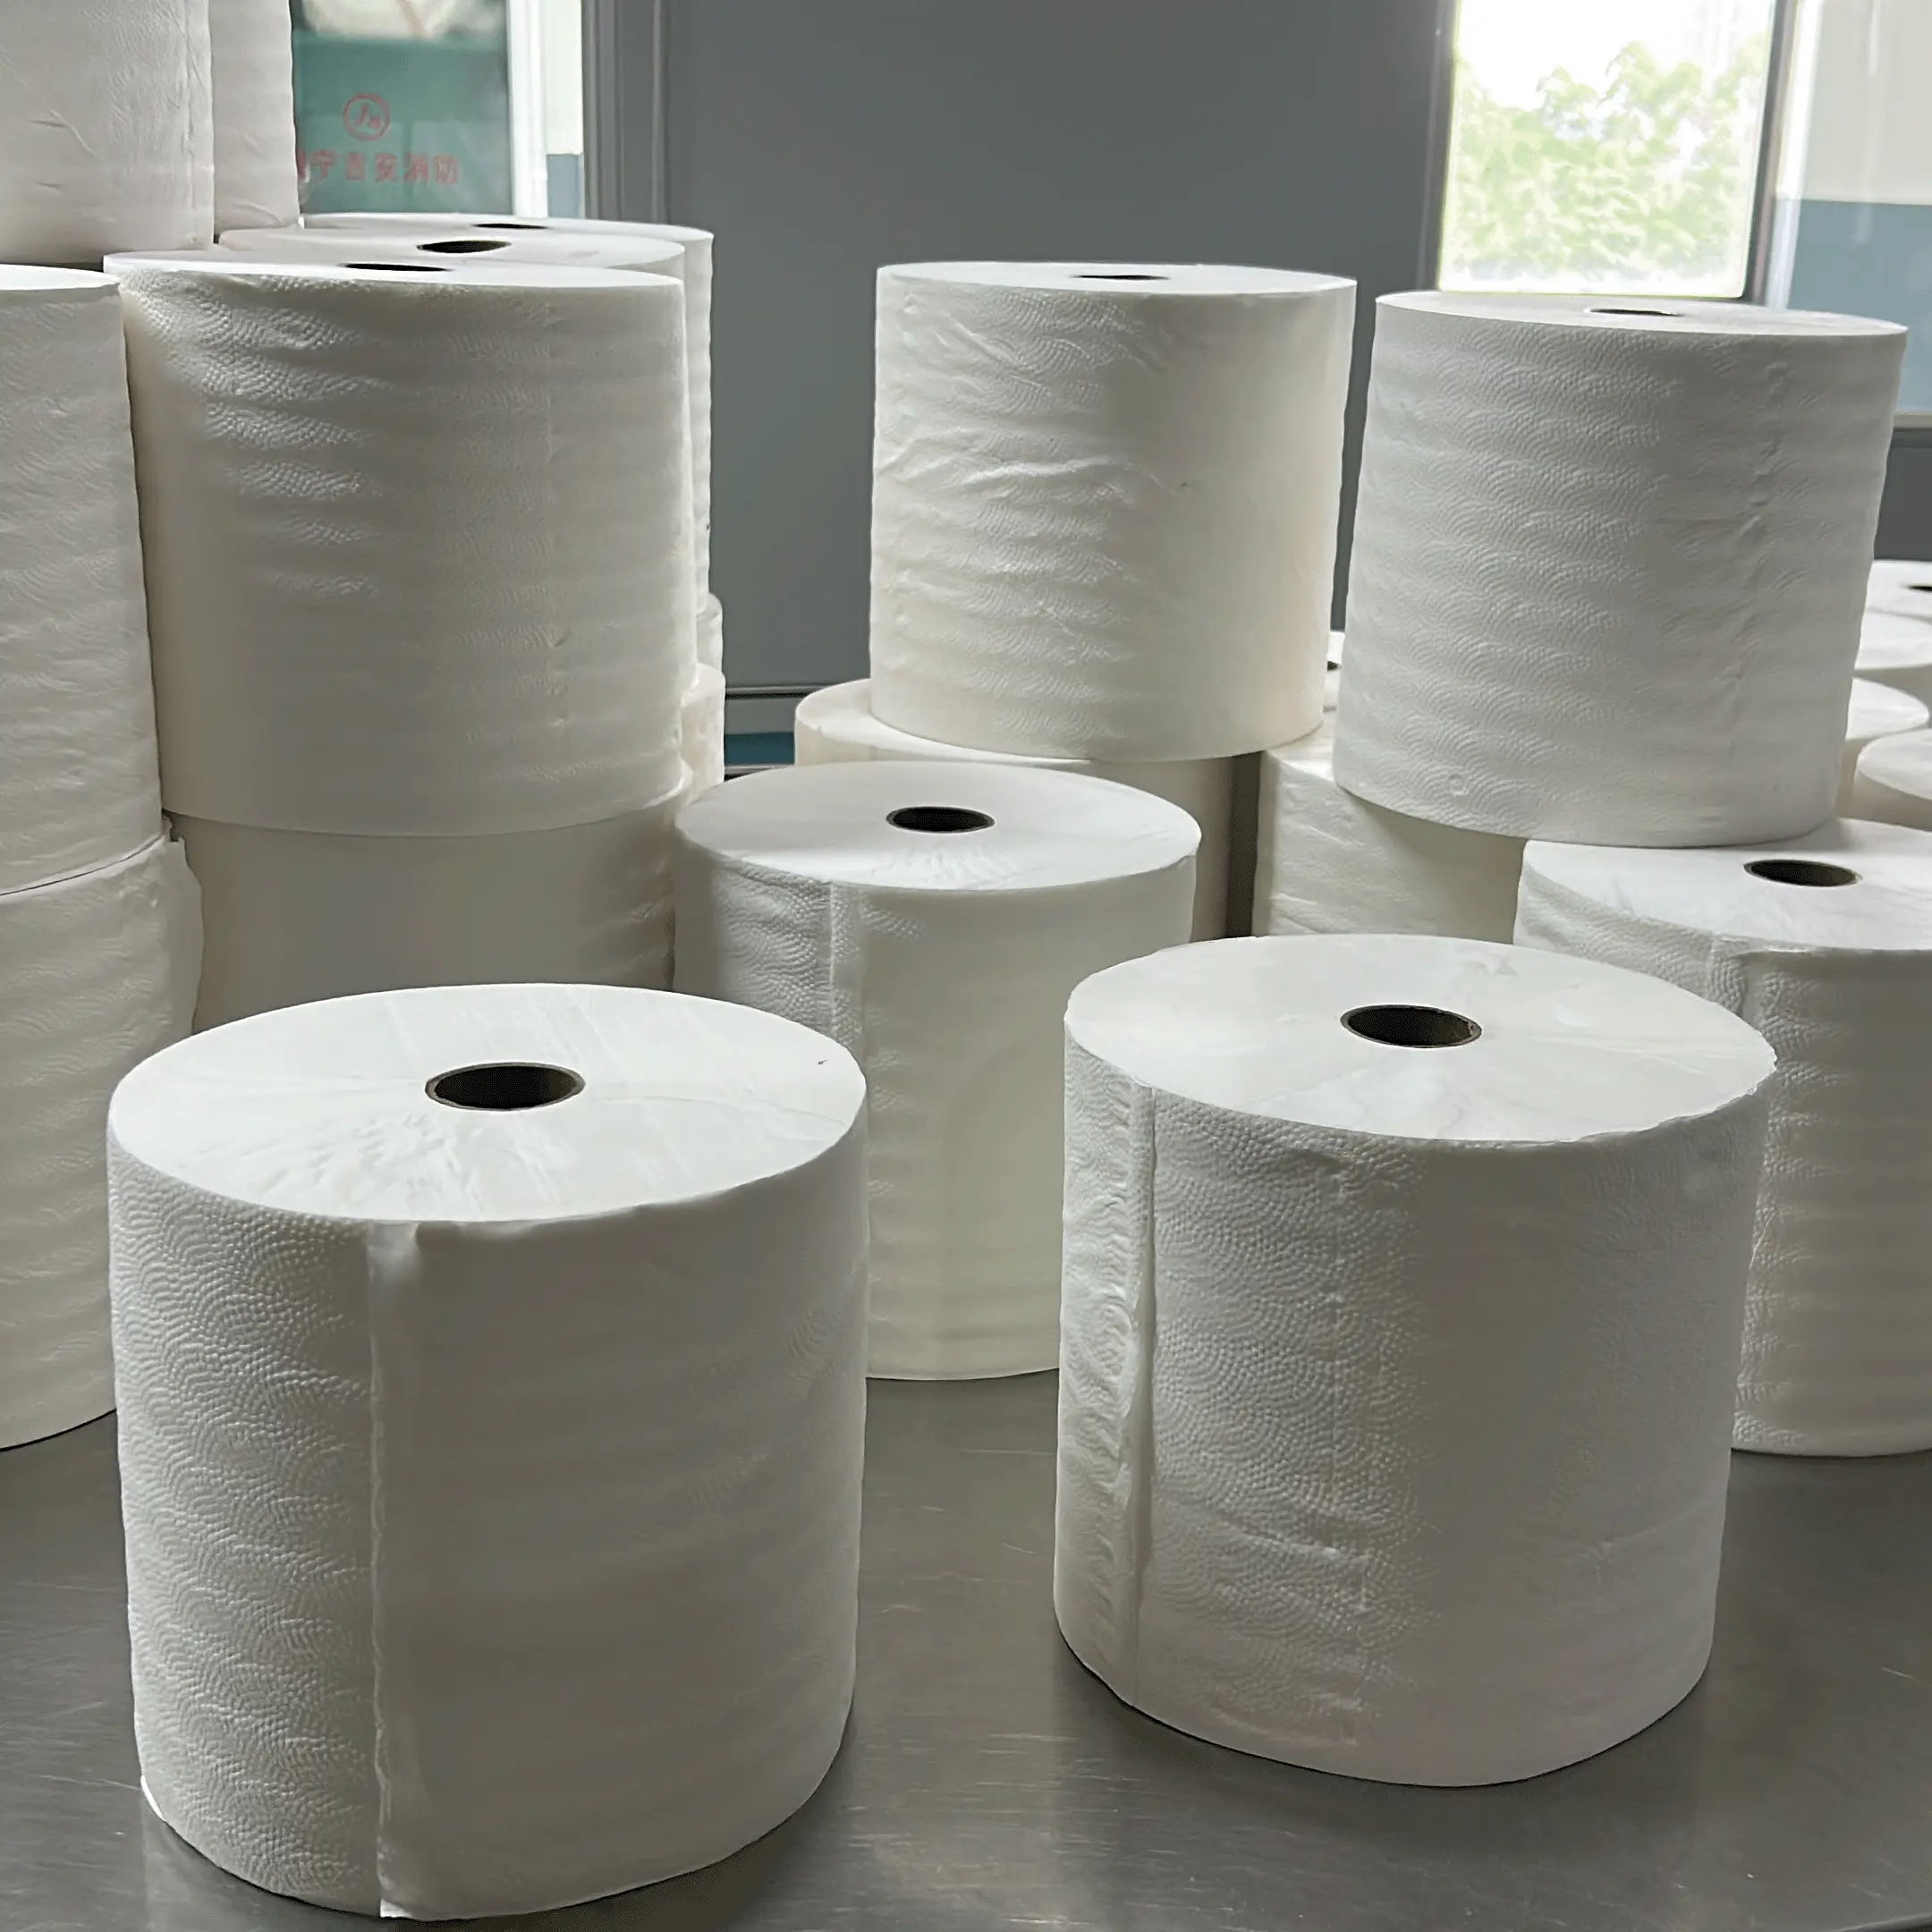 Rollos de toallas de papel Jumbo comerciales personalizados en relieve 2 capas de papel higiénico Pulpa de bambú toalla de papel de mano rollo de papel grande